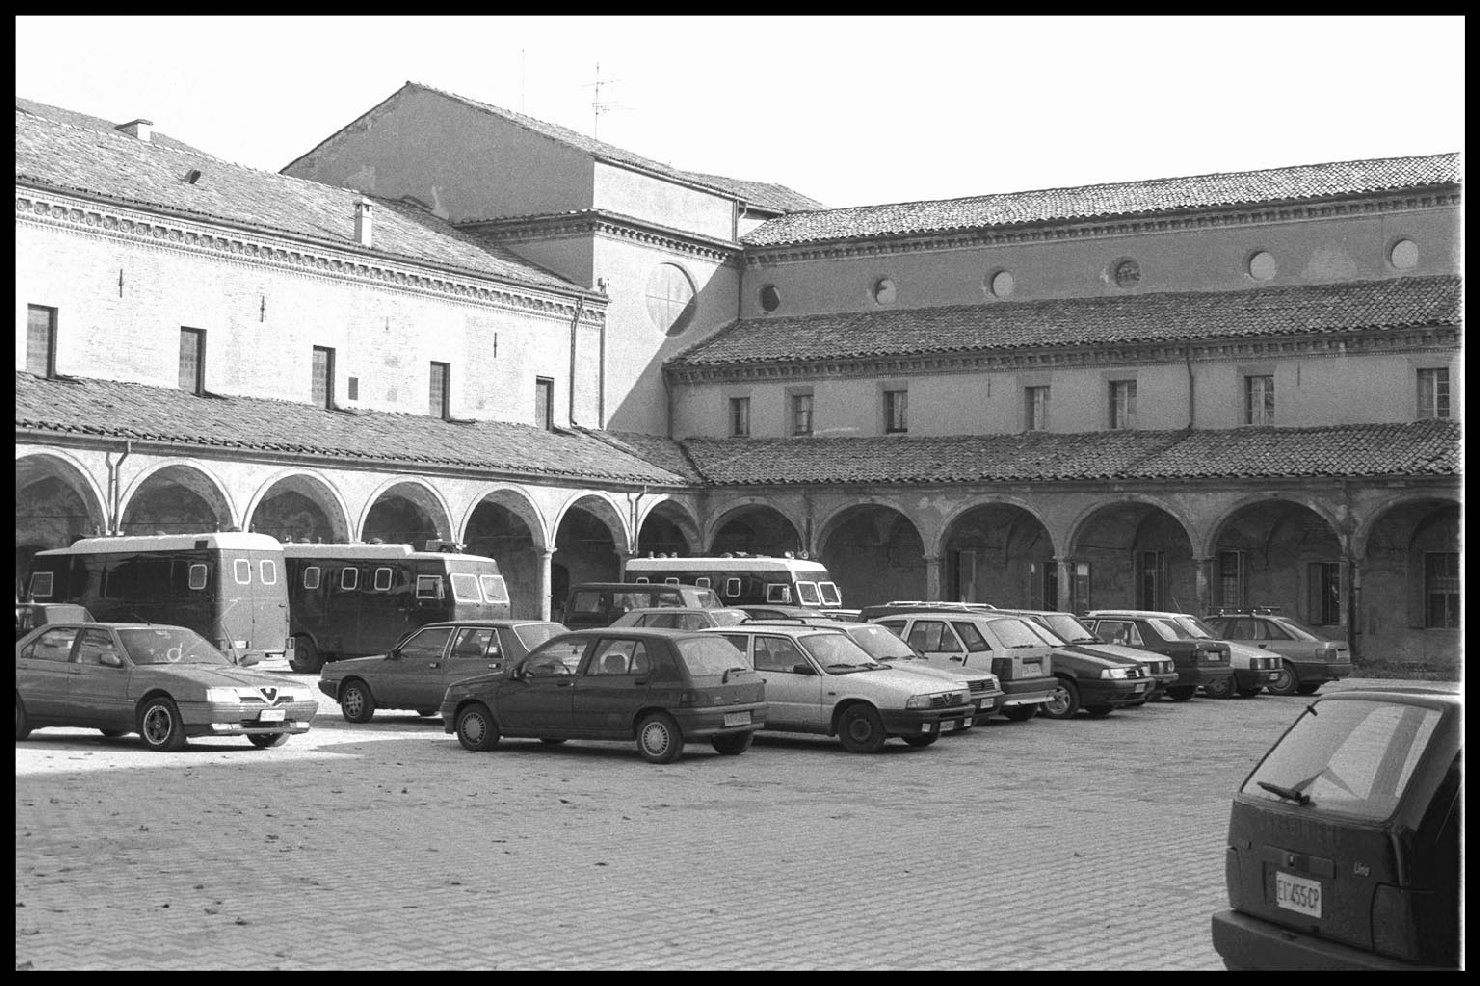 Convento patriarcale di San Domenico (convento, domenicano) - Bologna (BO) 